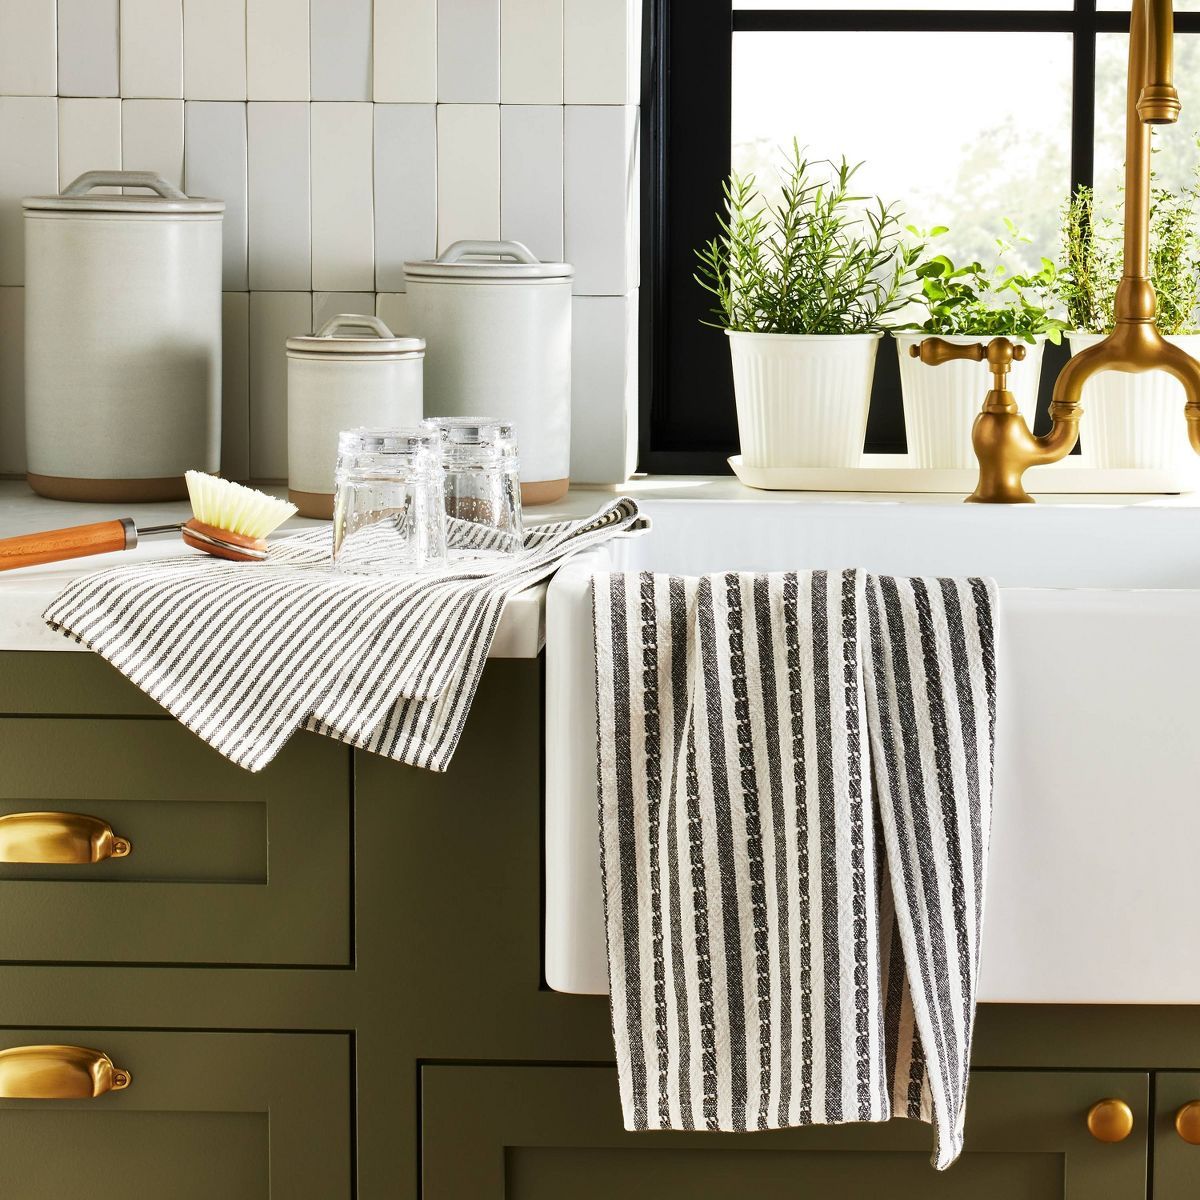 2ct Ticking Stripe Kitchen Towel Set Dark Gray/Cream - Hearth & Hand™ with Magnolia | Target